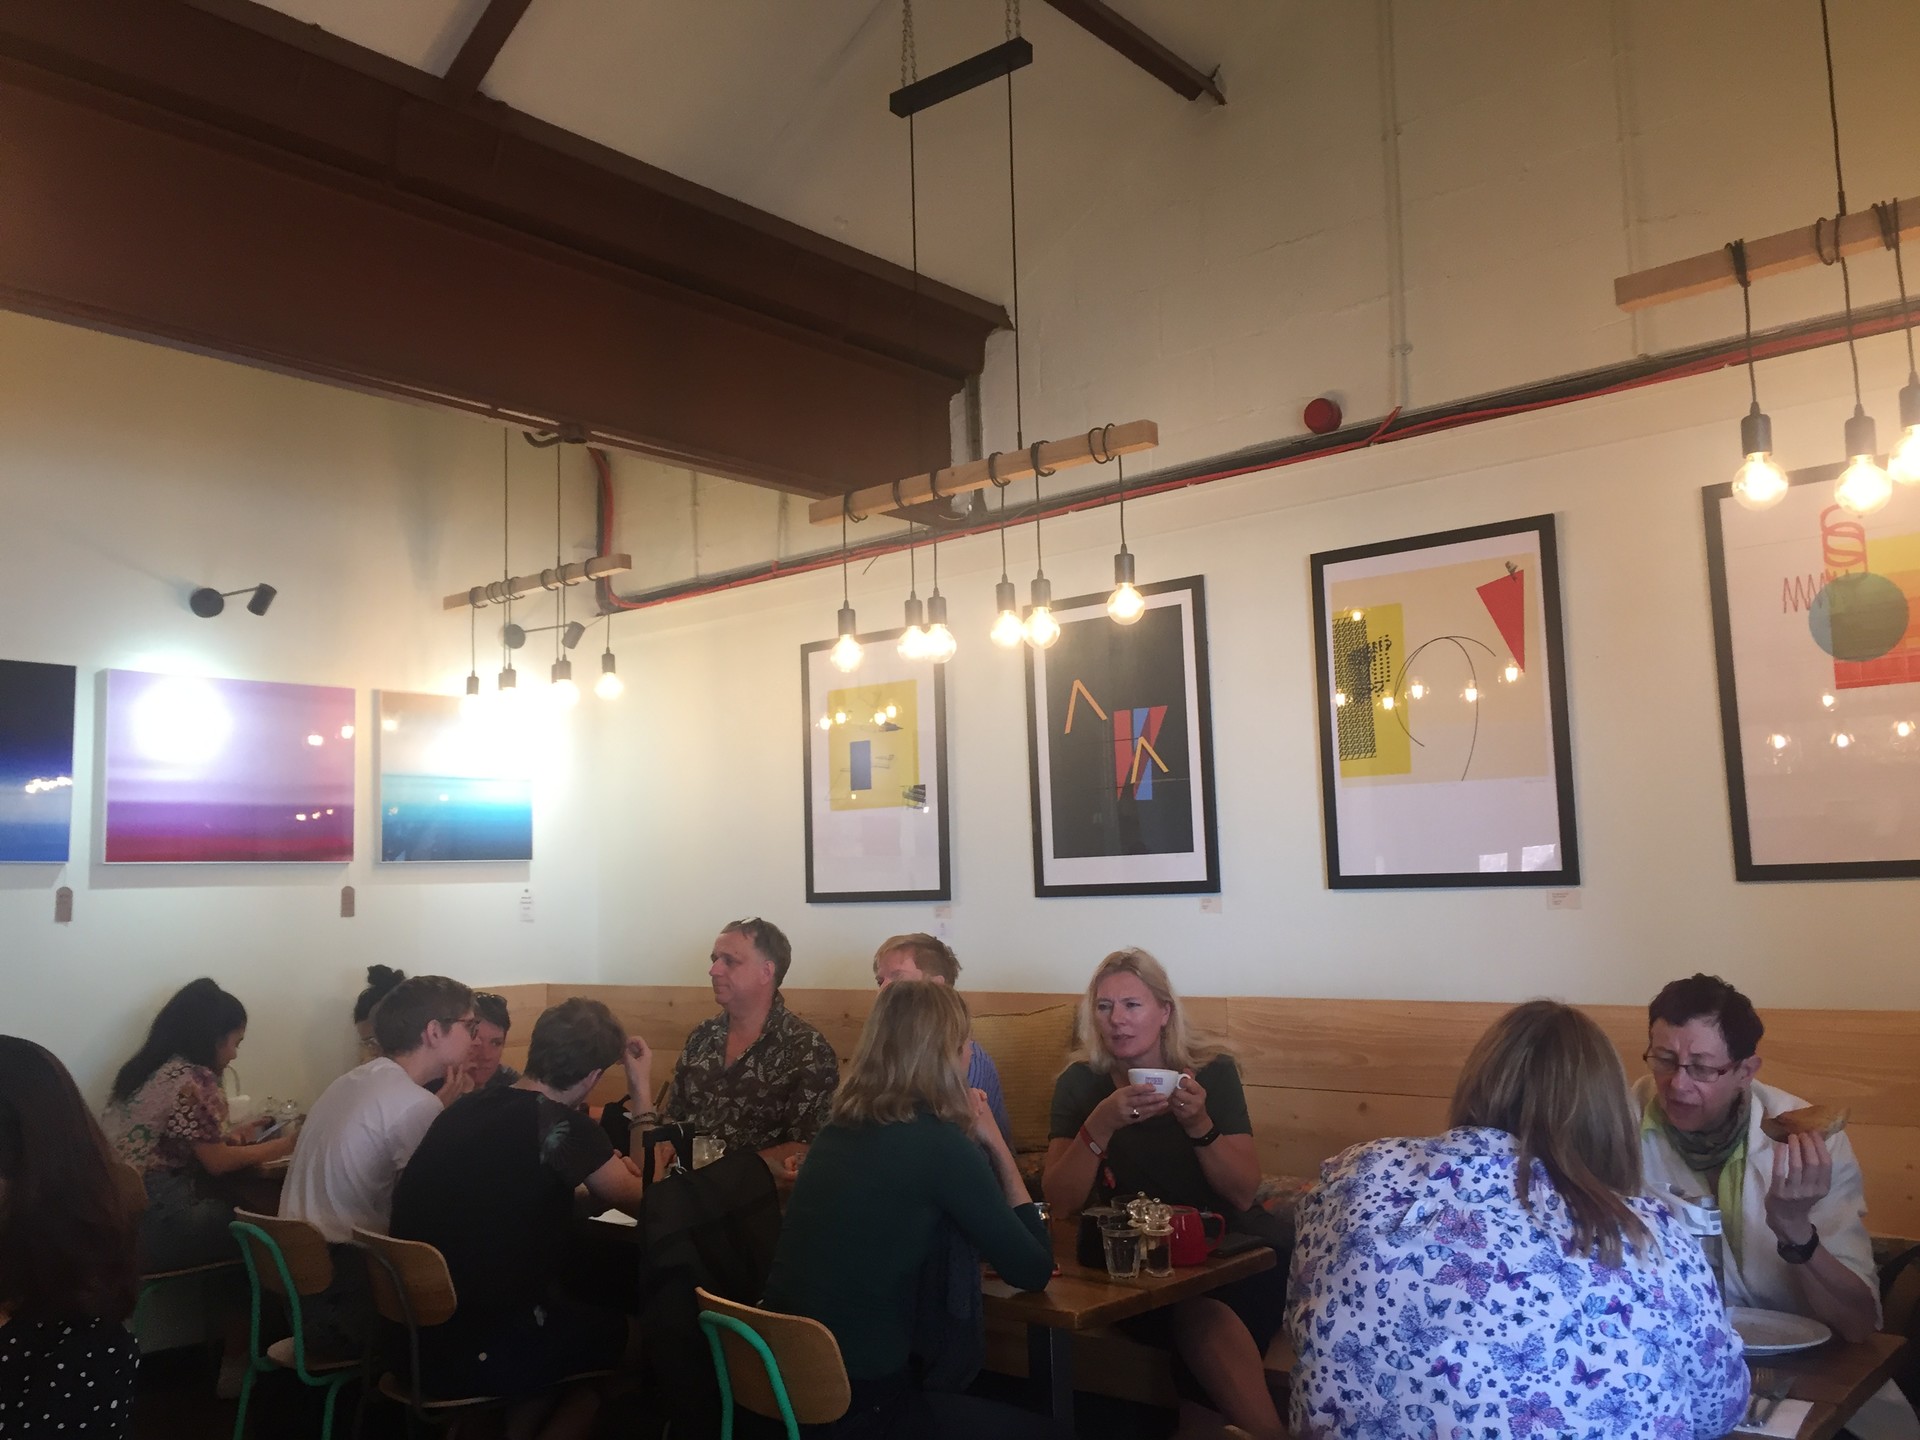 Café No. 33: Norwich's best brunch spot